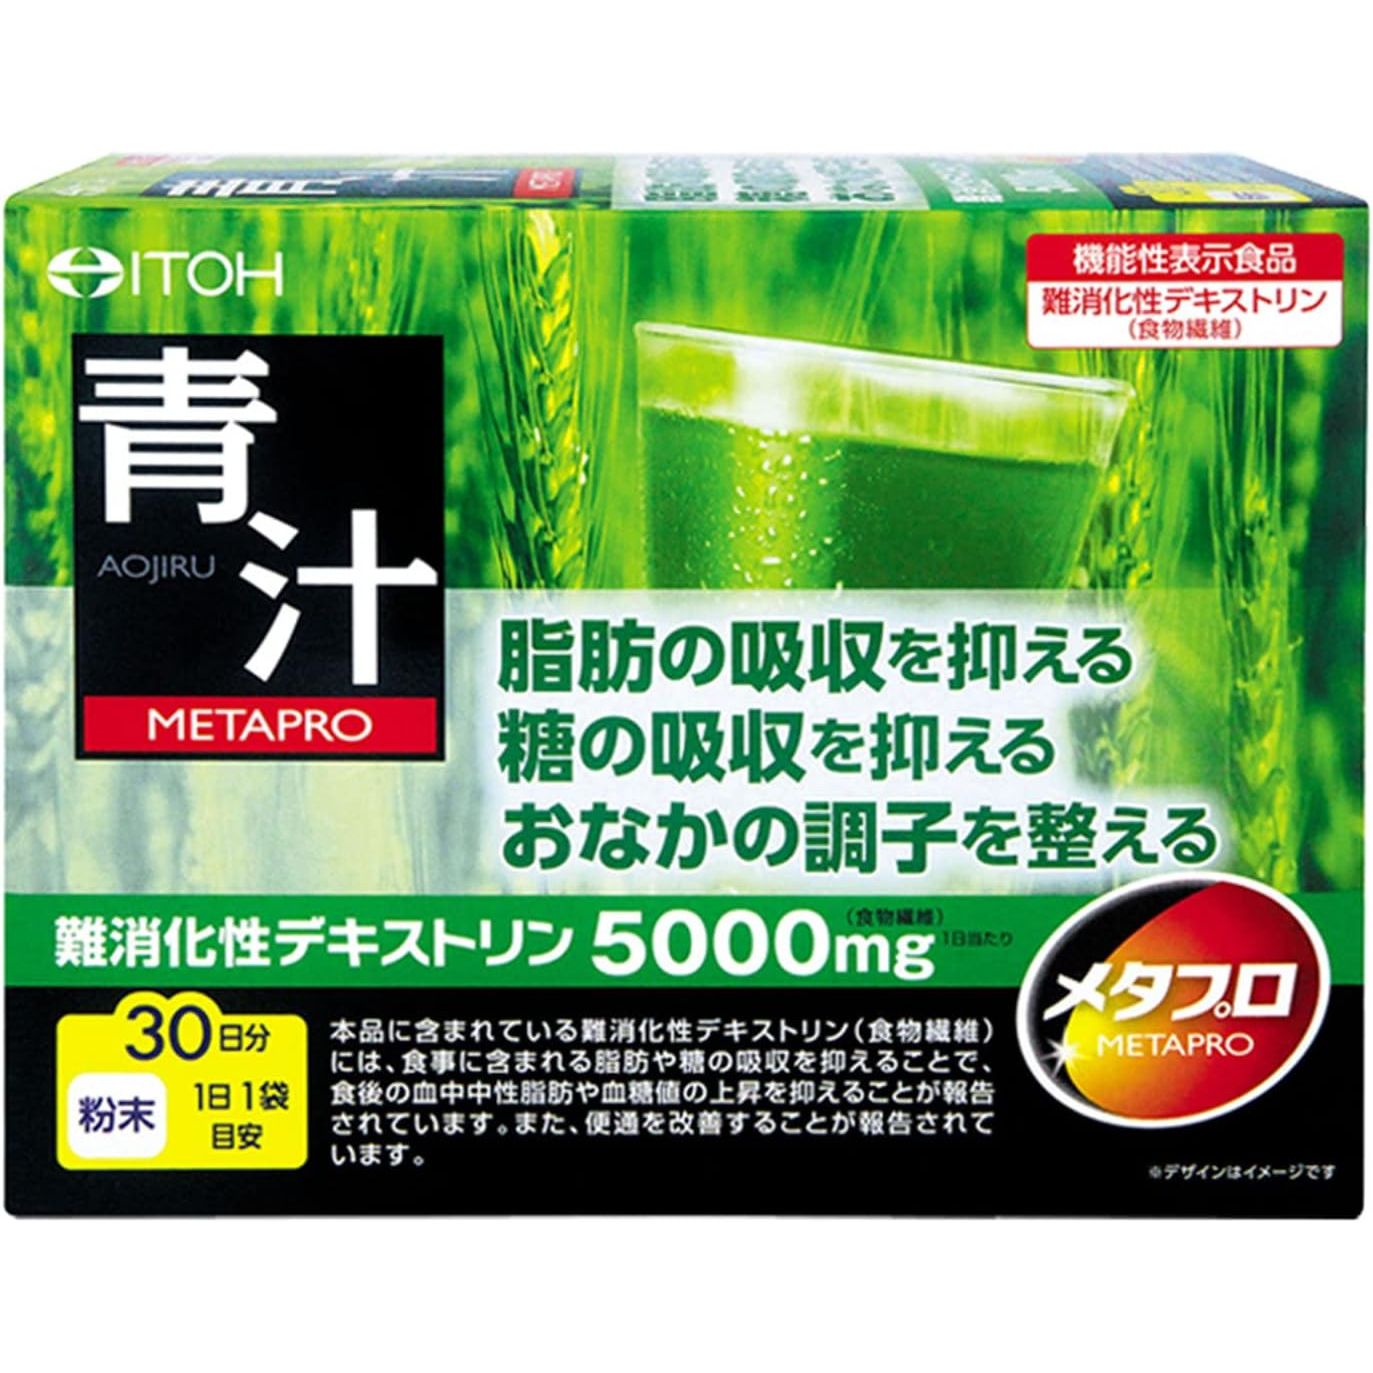 井藤漢方製薬 META Pro青汁